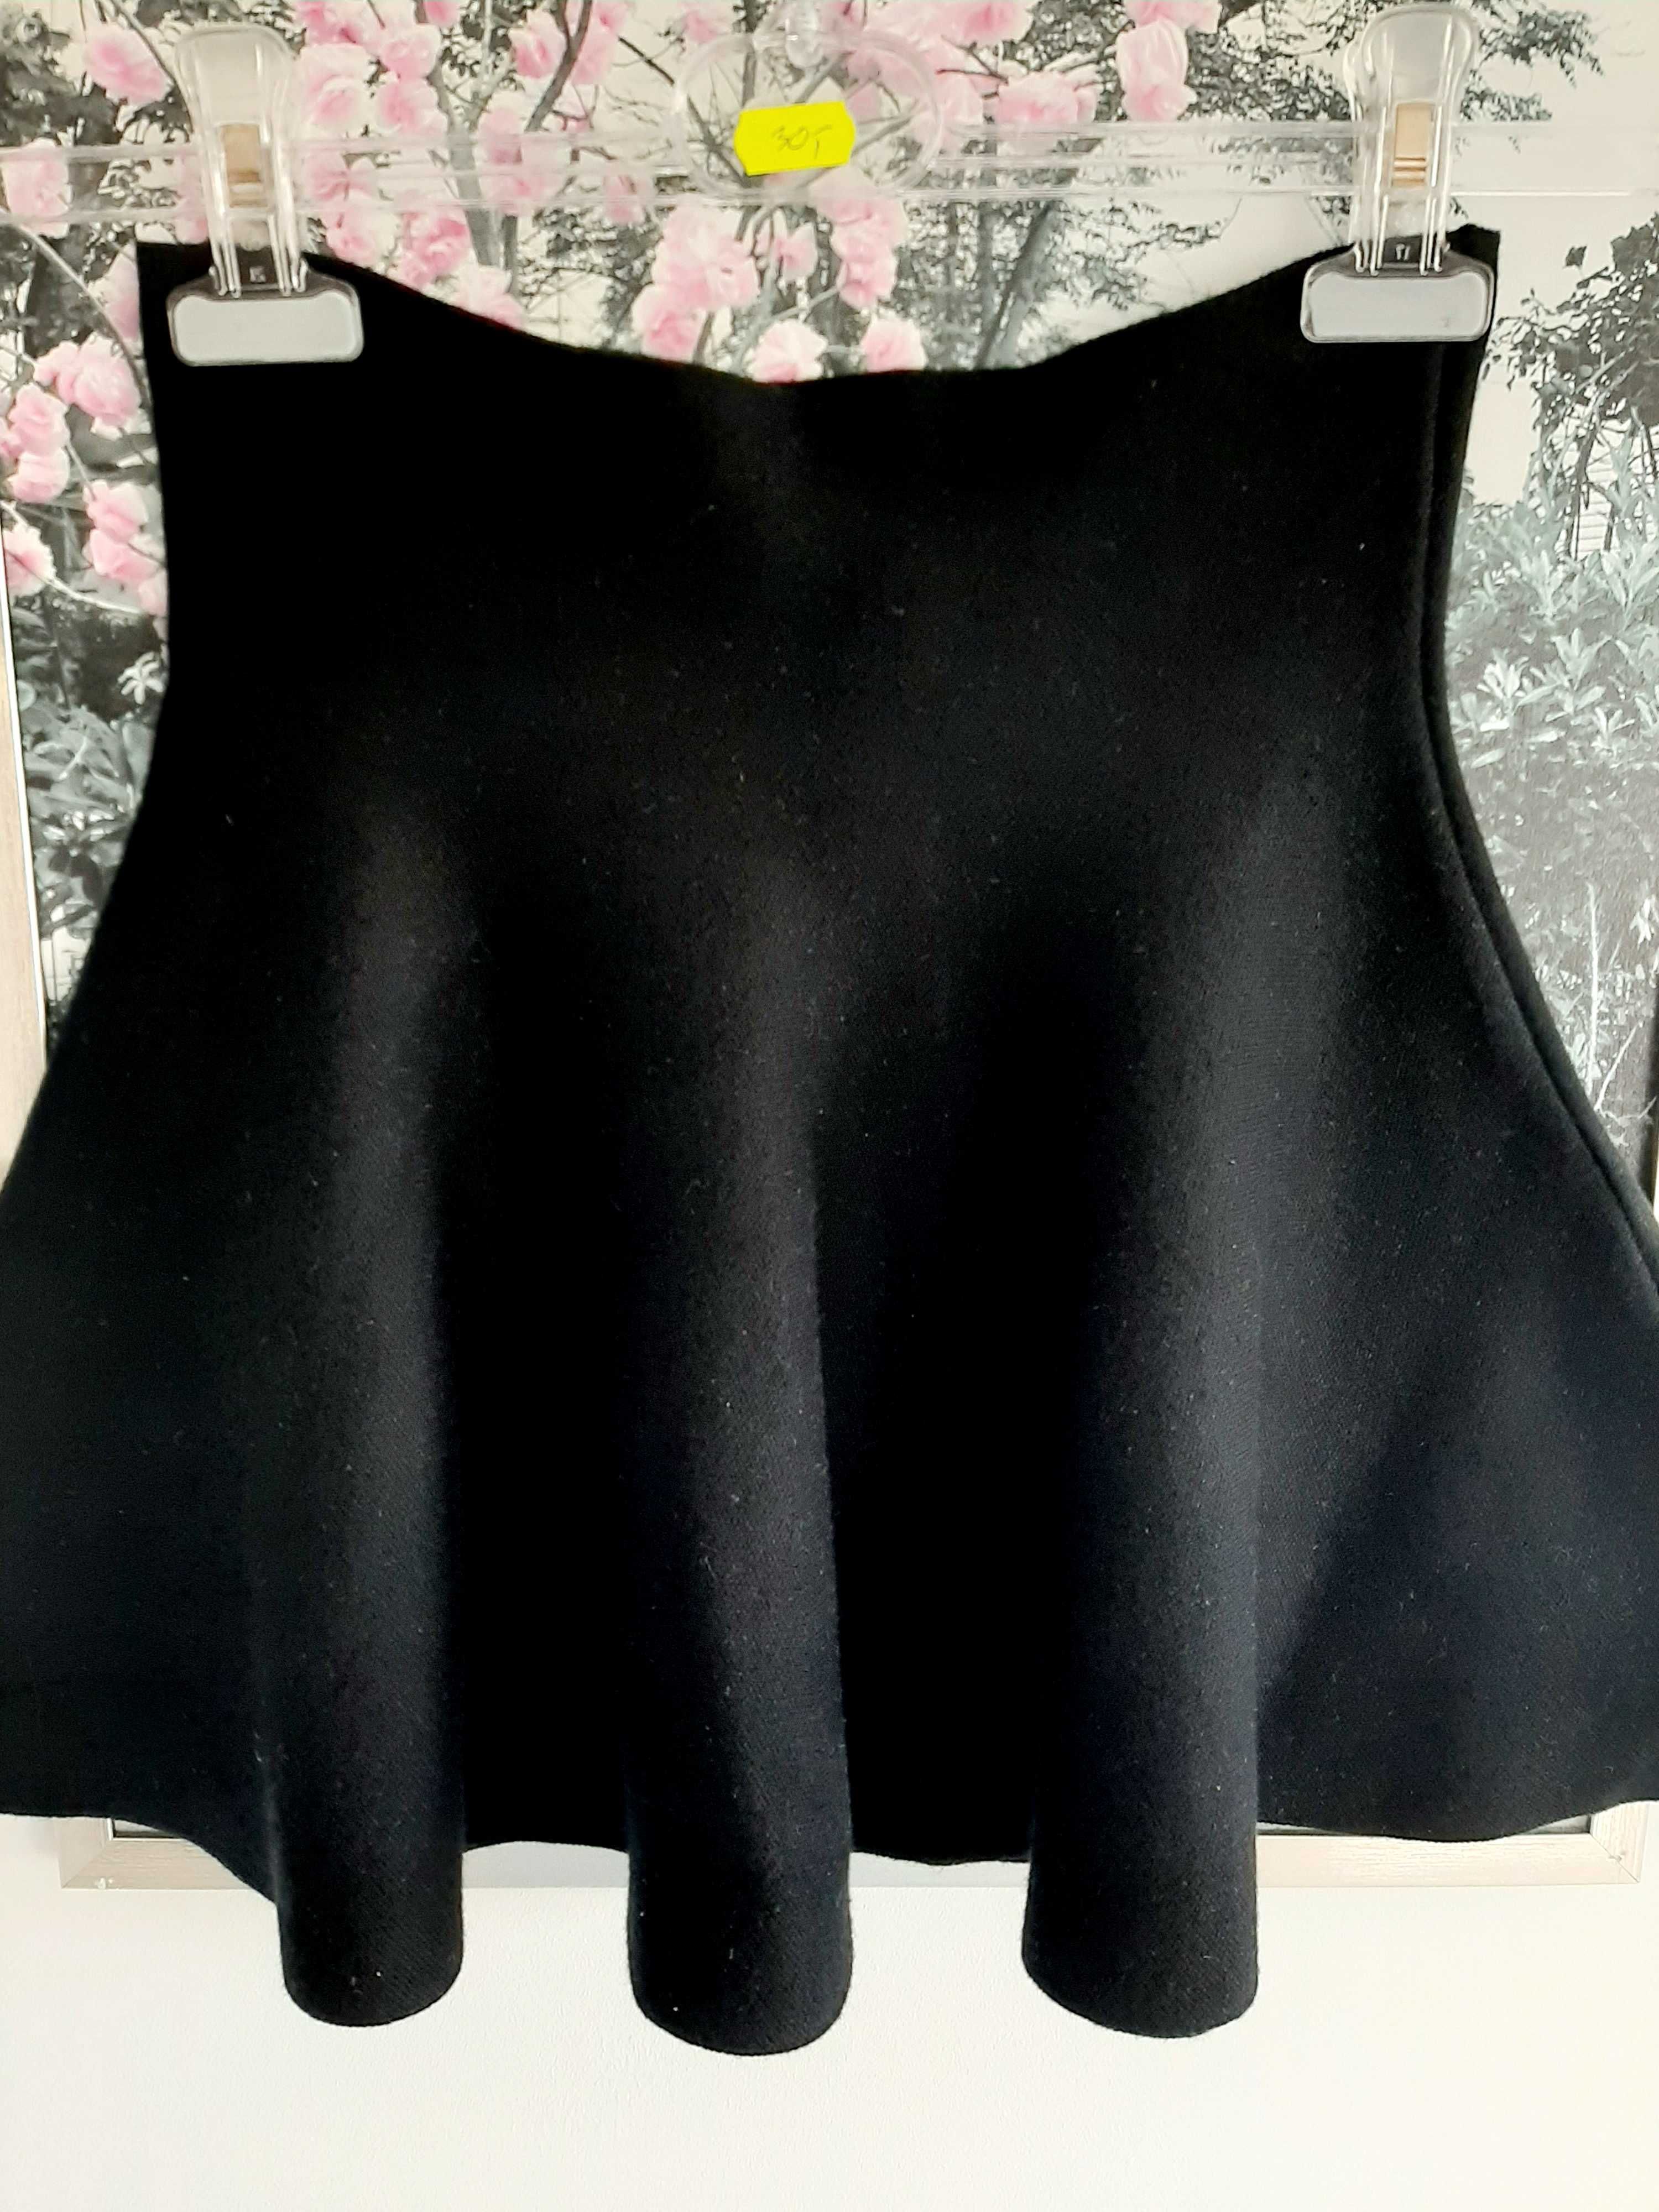 Spodnica mini czarna rozkloszowana skaterka 34 XS